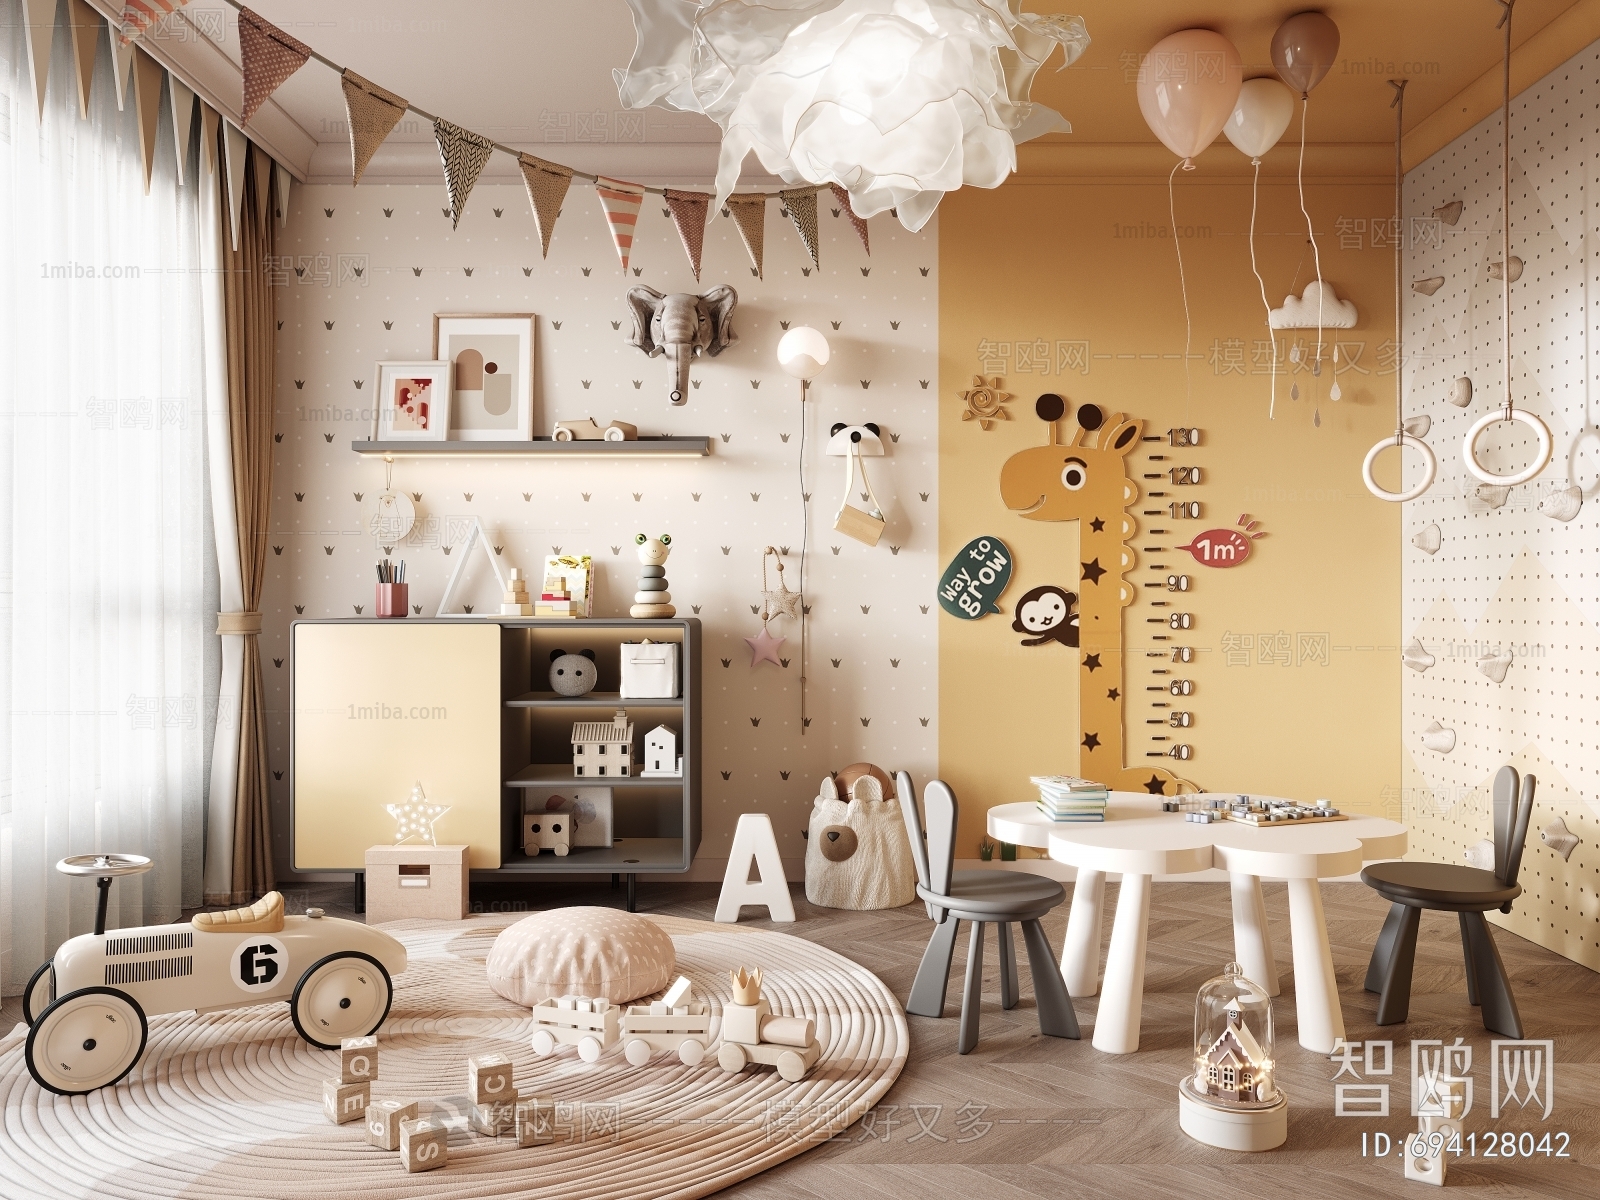 Nordic Style Children's Room